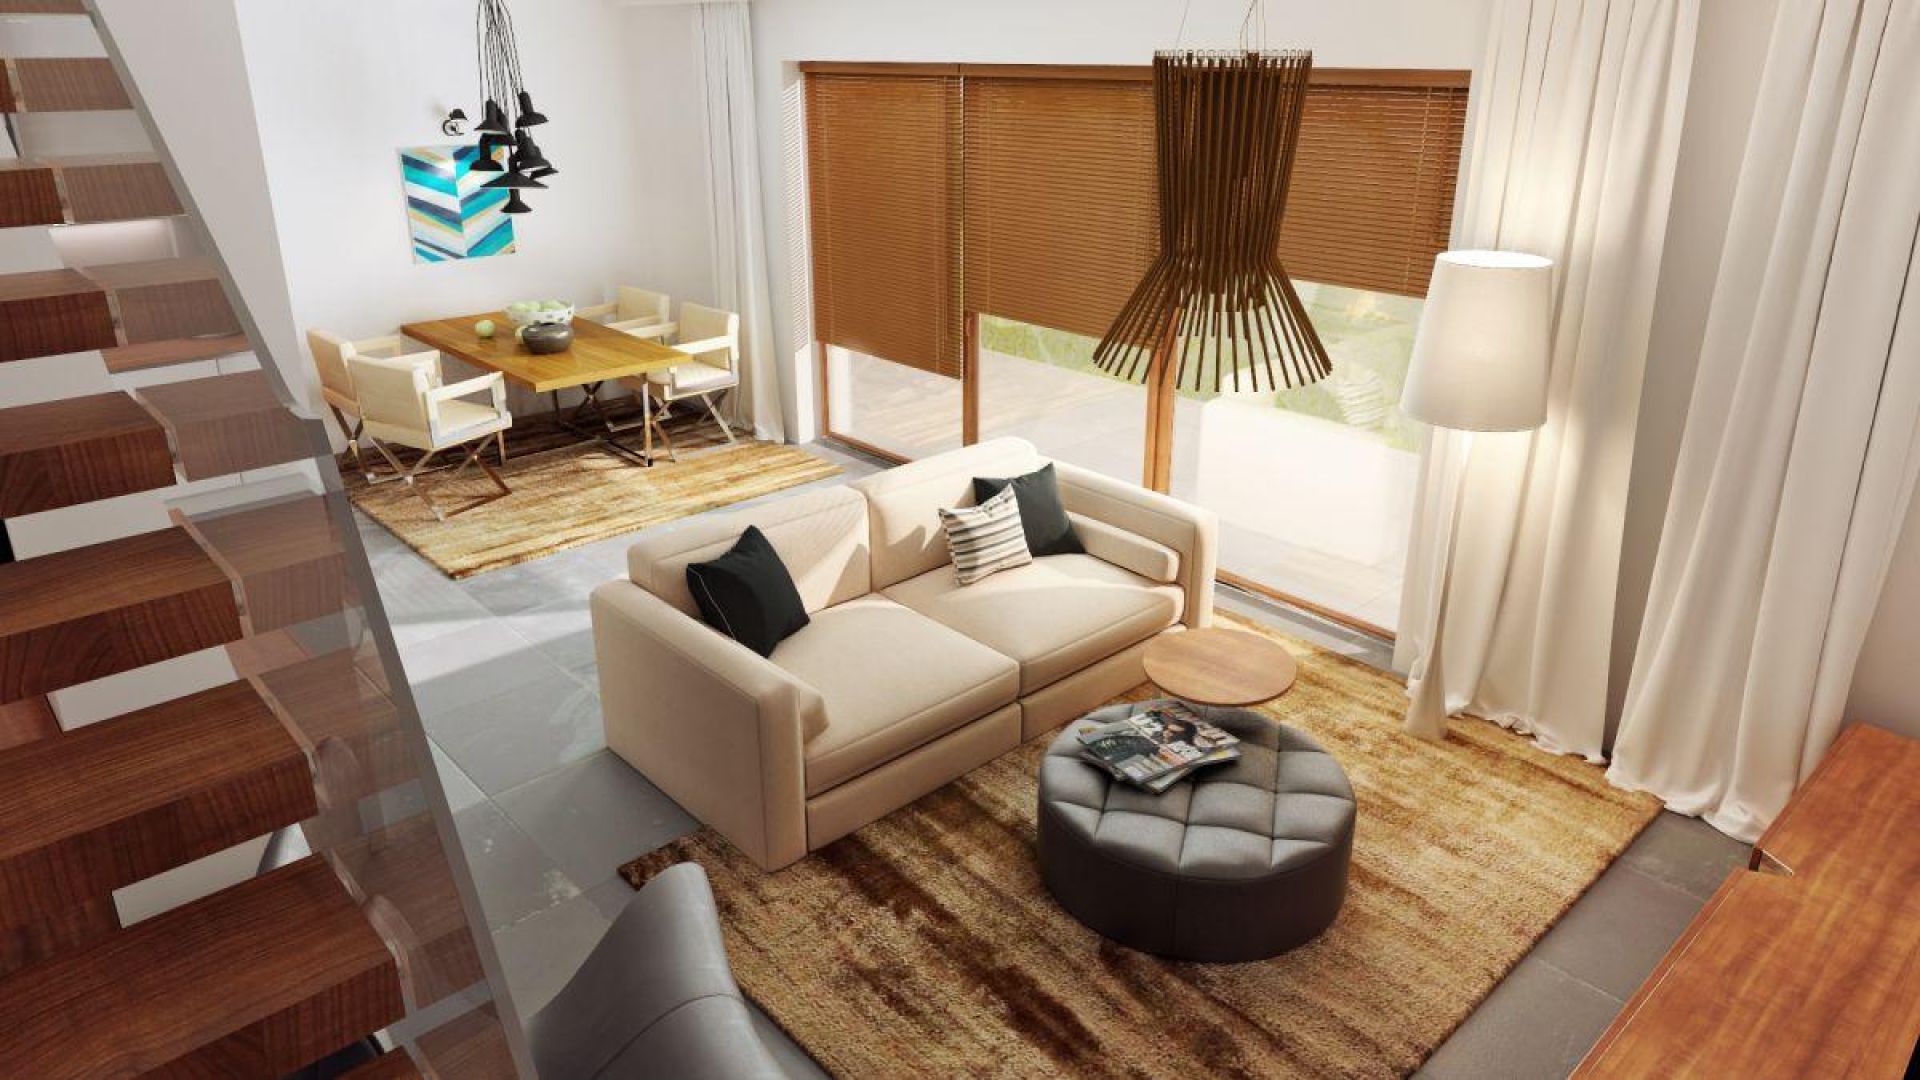 Aby zaakcentować jednolity styl przestrzeni dziennej zastosowano zarówno w salonie, jak i jadalni podobne dywany. Projekt domu Zb5, Zespół Z500